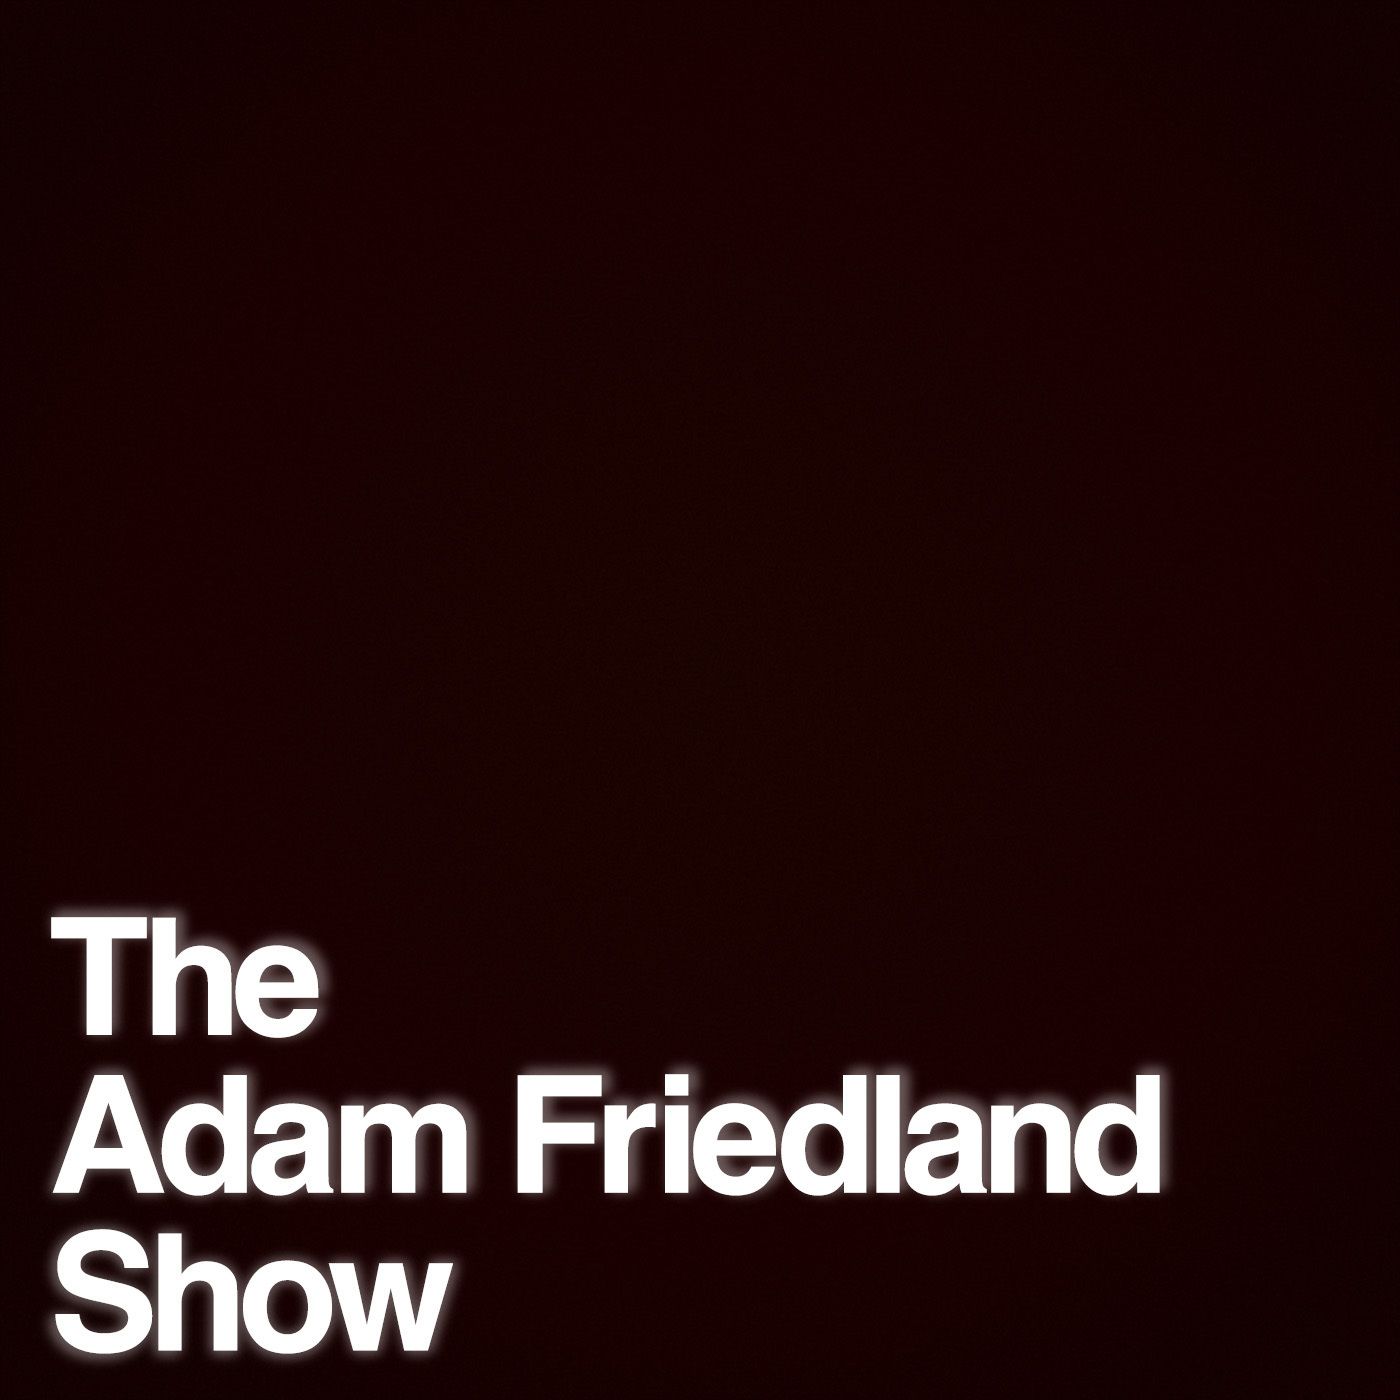 The Adam Friedland Show Podcast - Episode 29